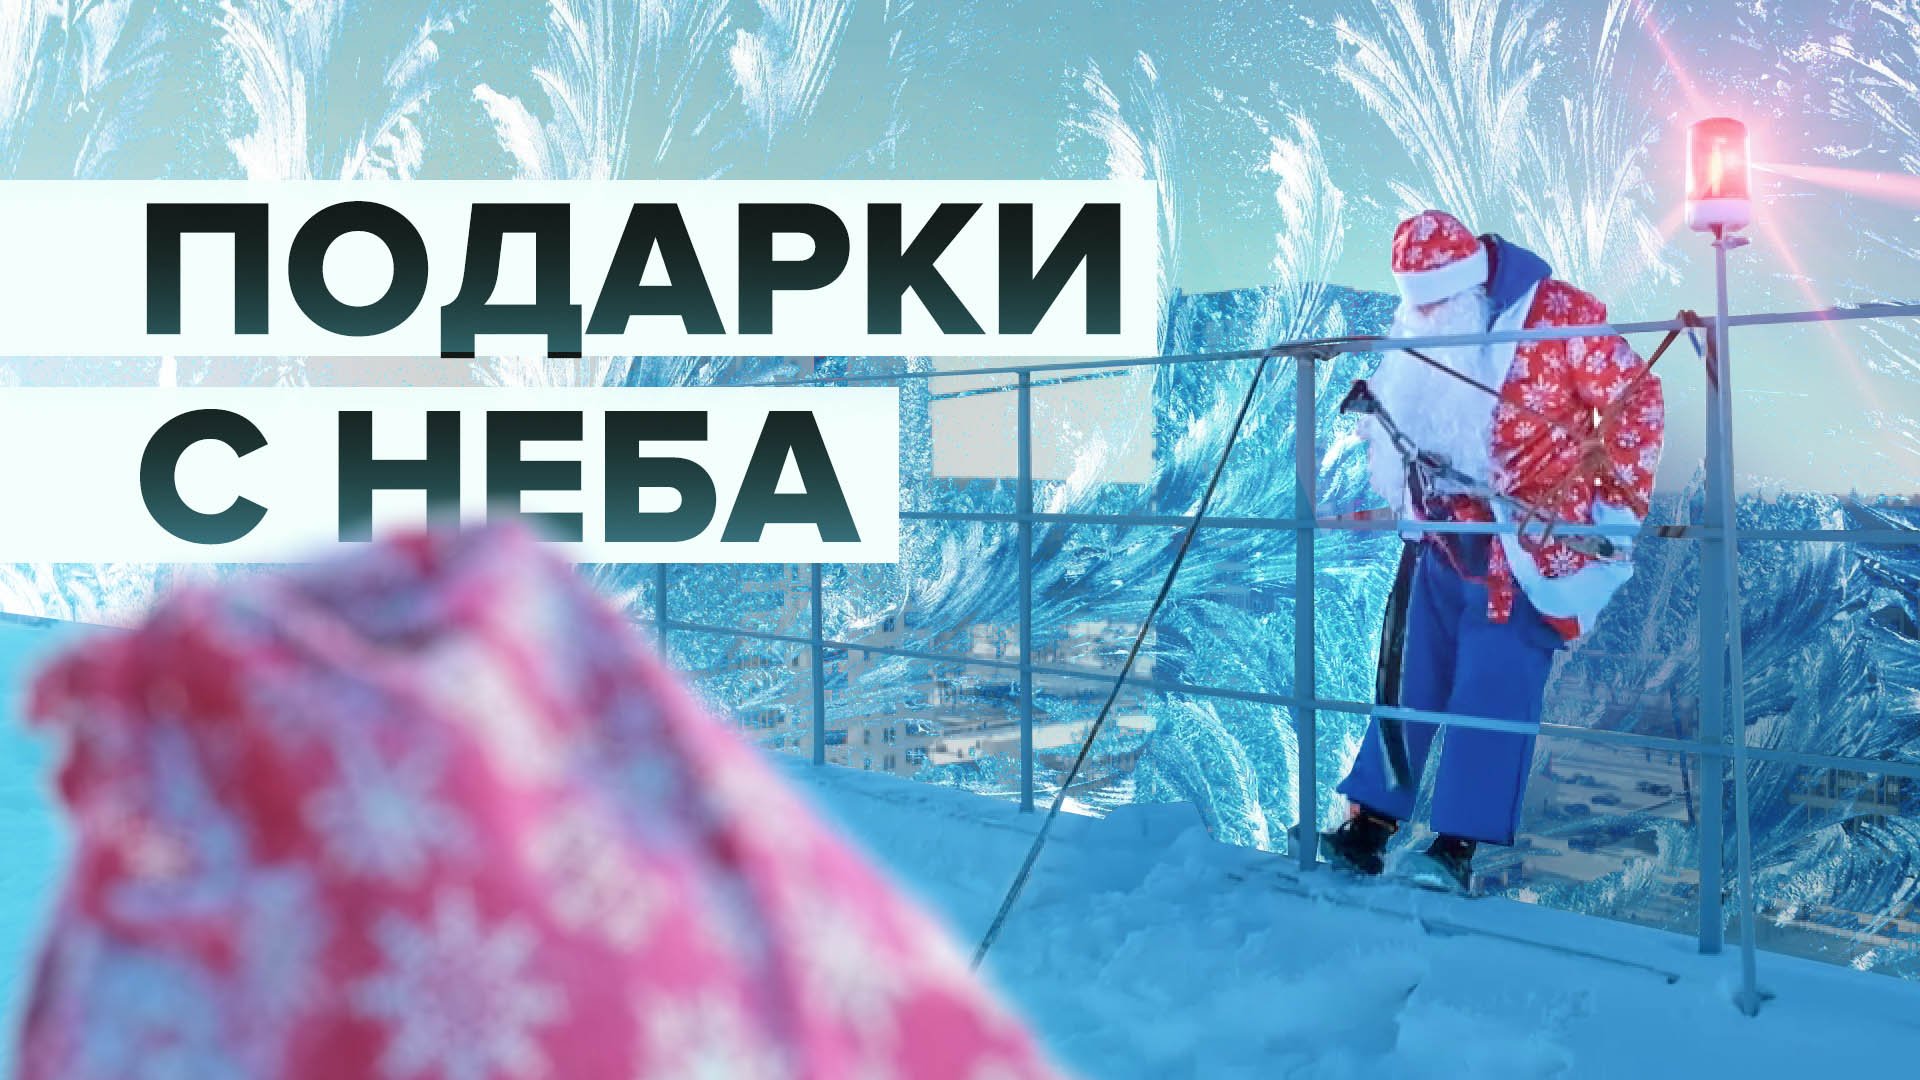 Всё ради эмоций: Дед Мороз — альпинист из Челябинска вручает подарки через окно